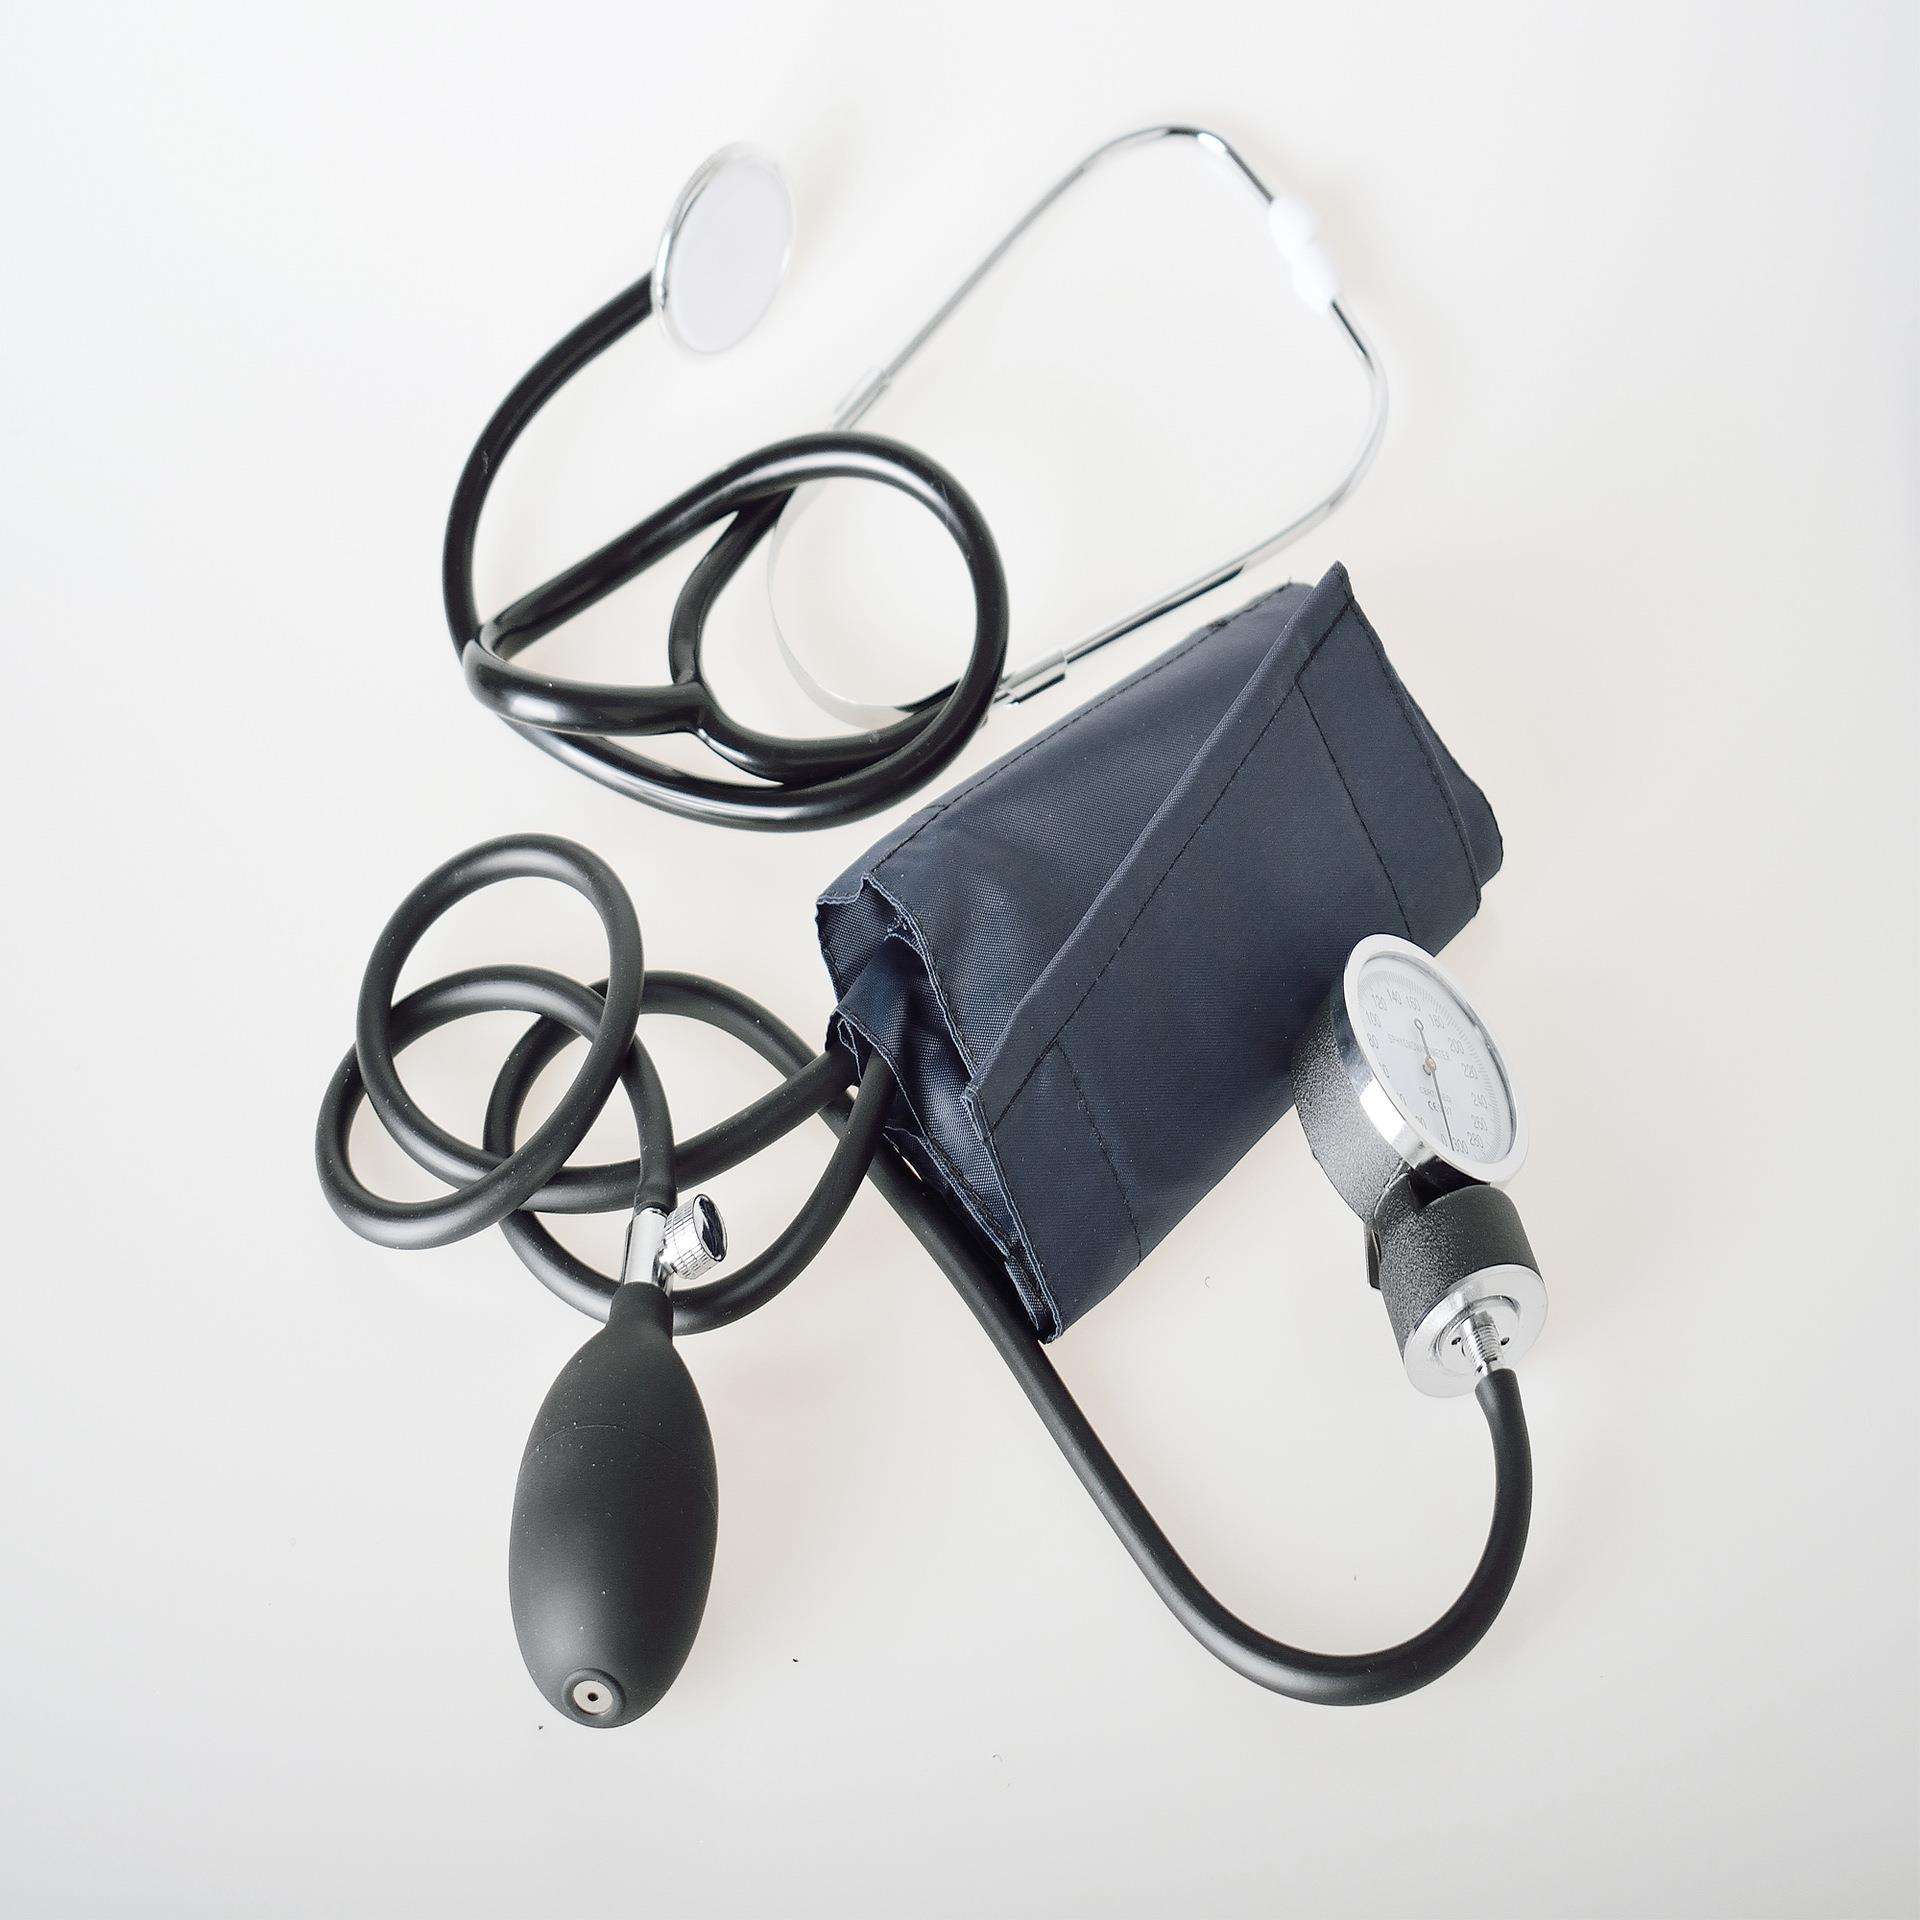 جهاز قياس ضغط الدم اليدوي للاستخدام الطبي